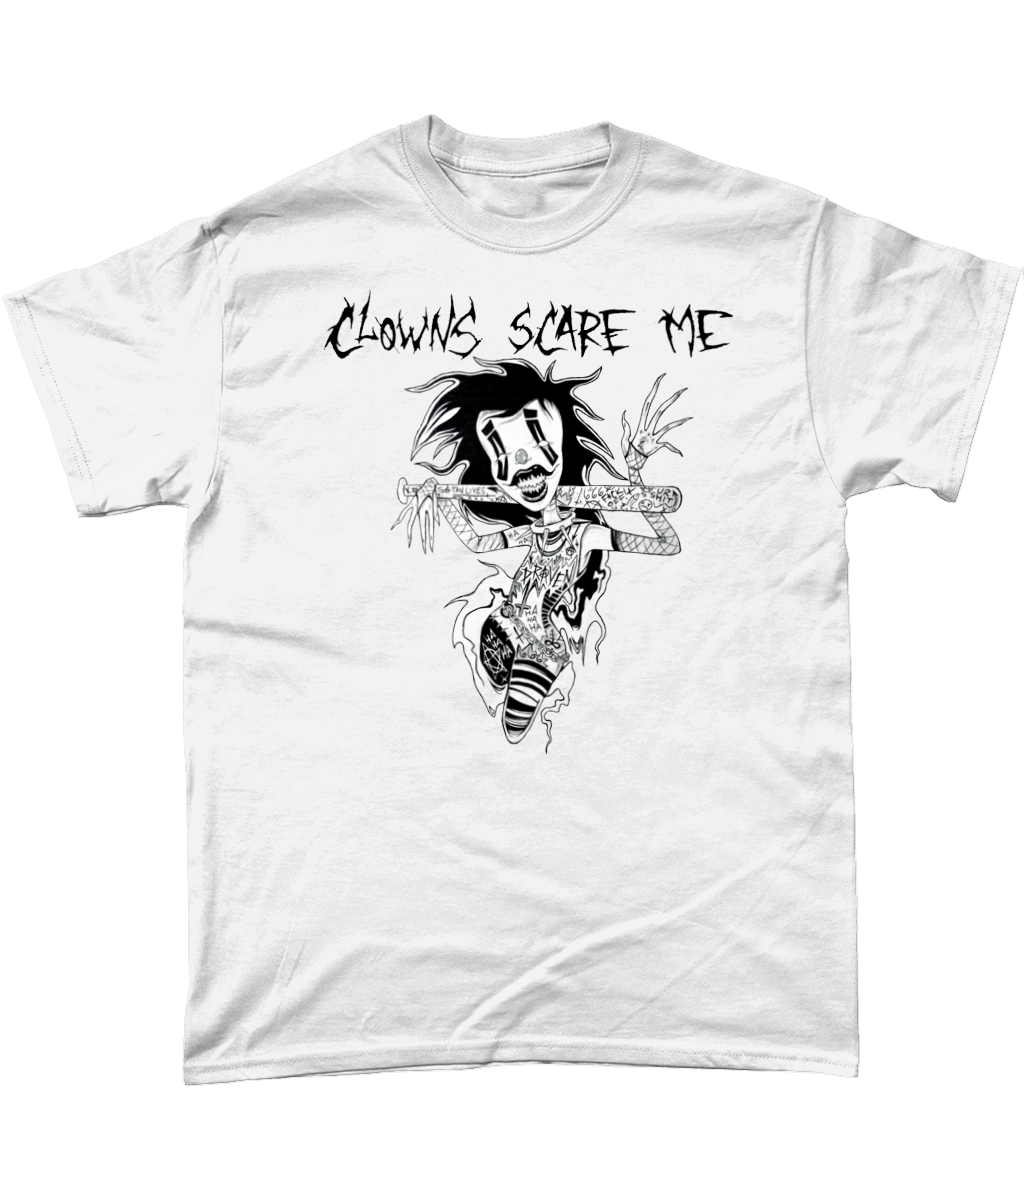 Draven - Clowns Scare Me T-Shirt